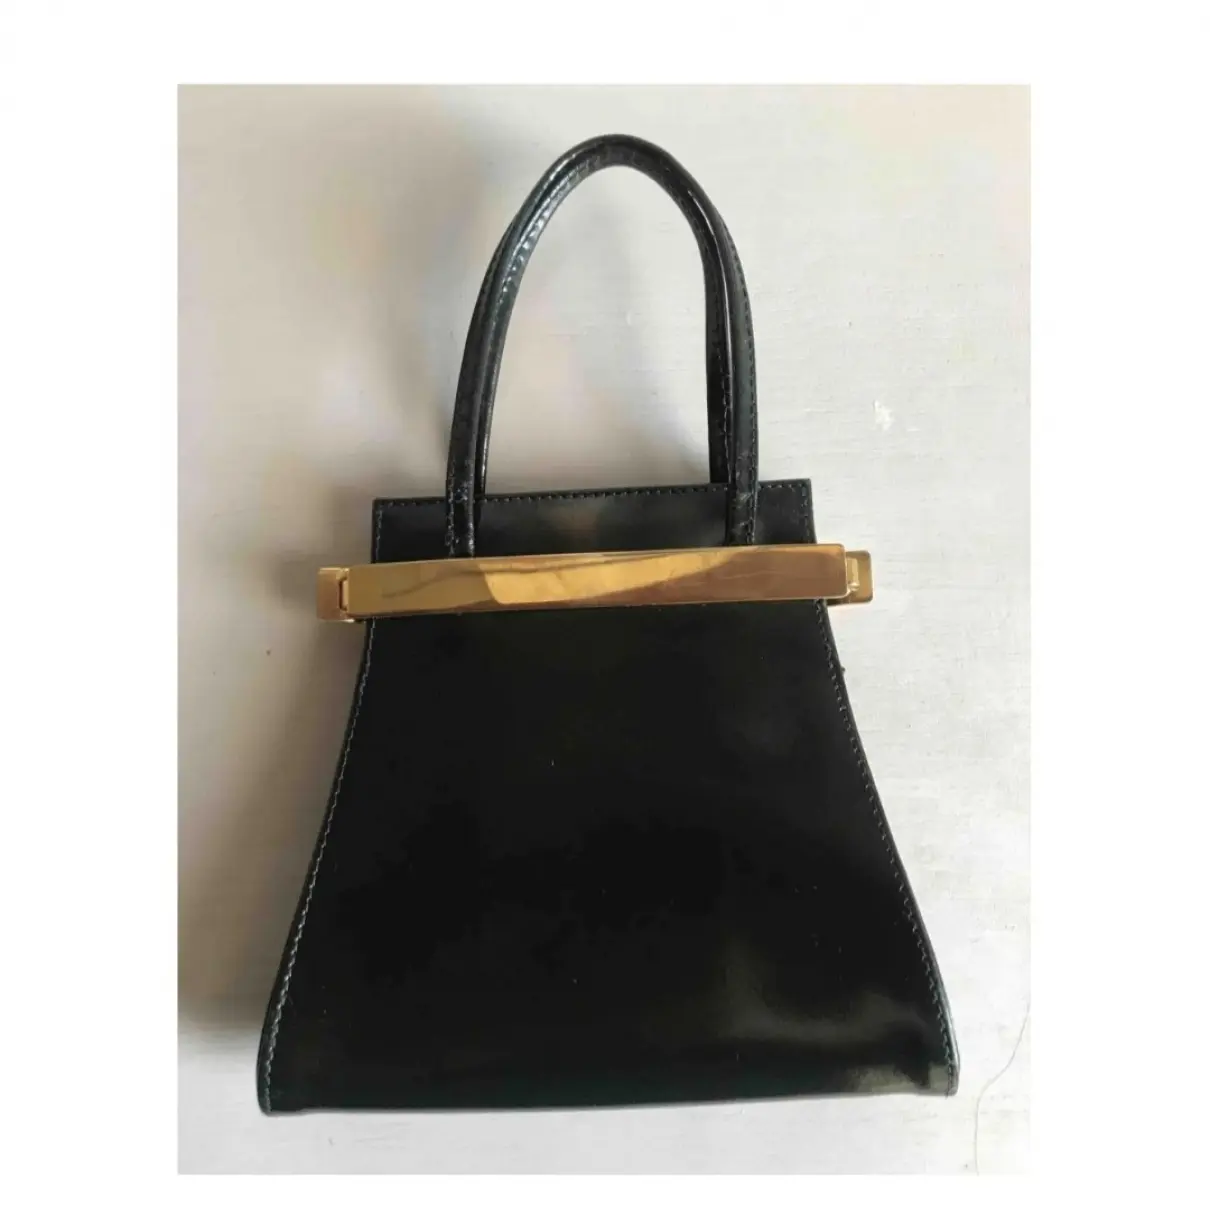 Karl Lagerfeld Leather handbag for sale - Vintage